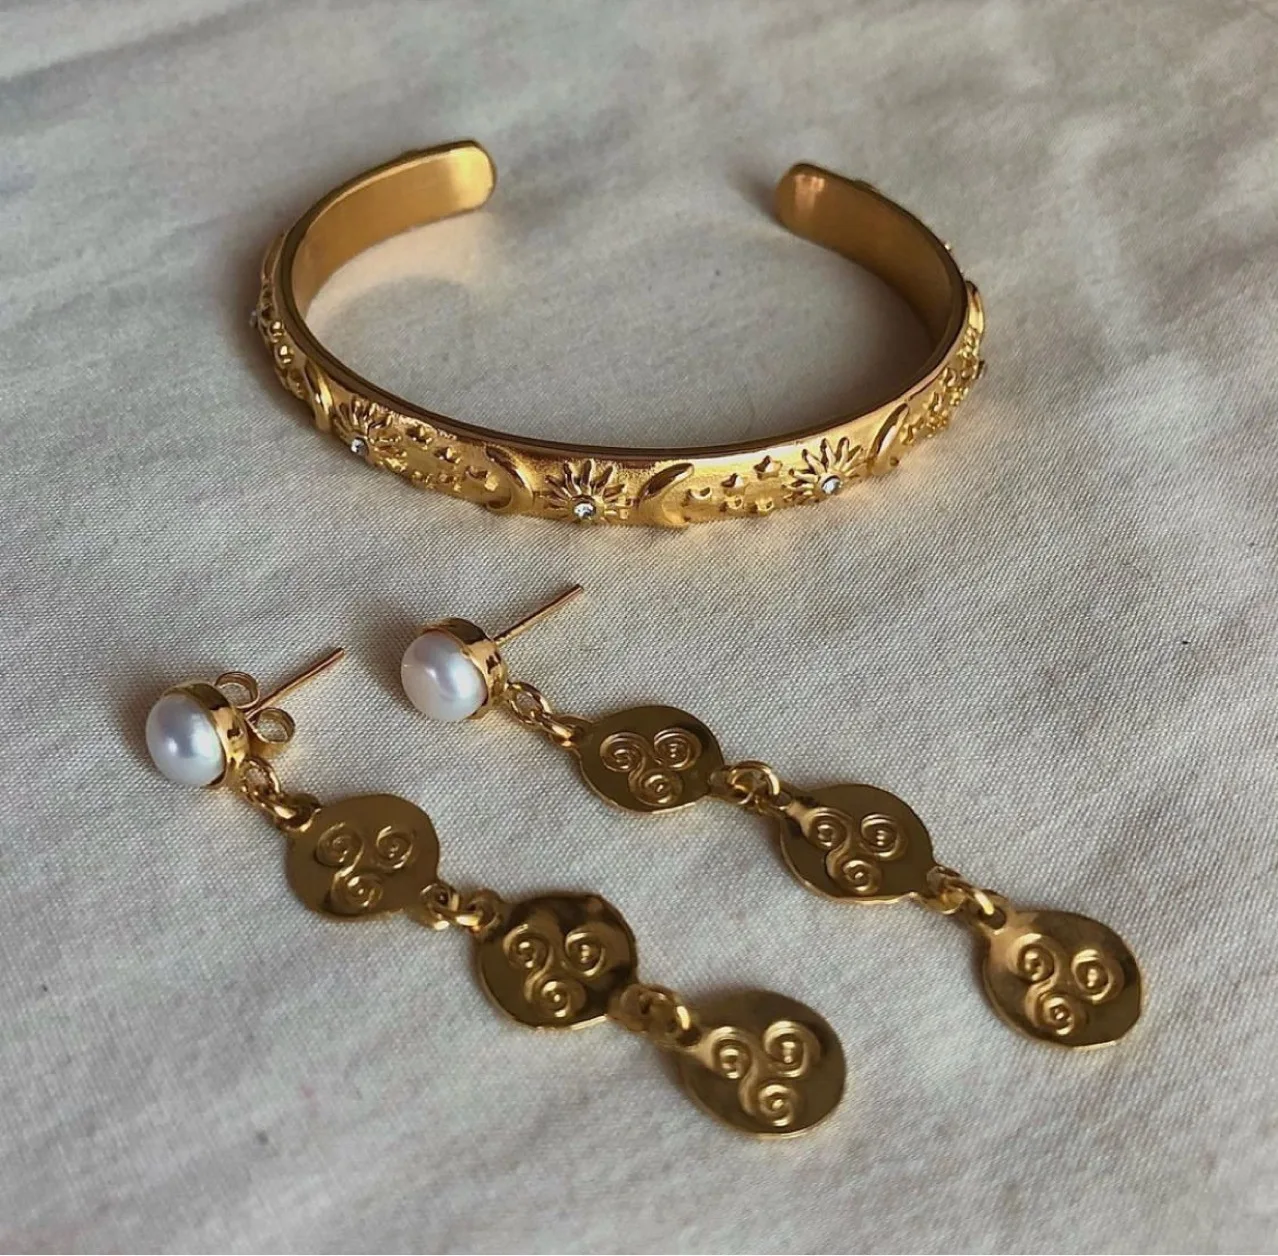 Pulsera de acero inoxidable para mujer y niña, brazalete de oro de 18K con forma de estrella, Luna, sol, circonita colorida, Estilo Vintage, joyería estética